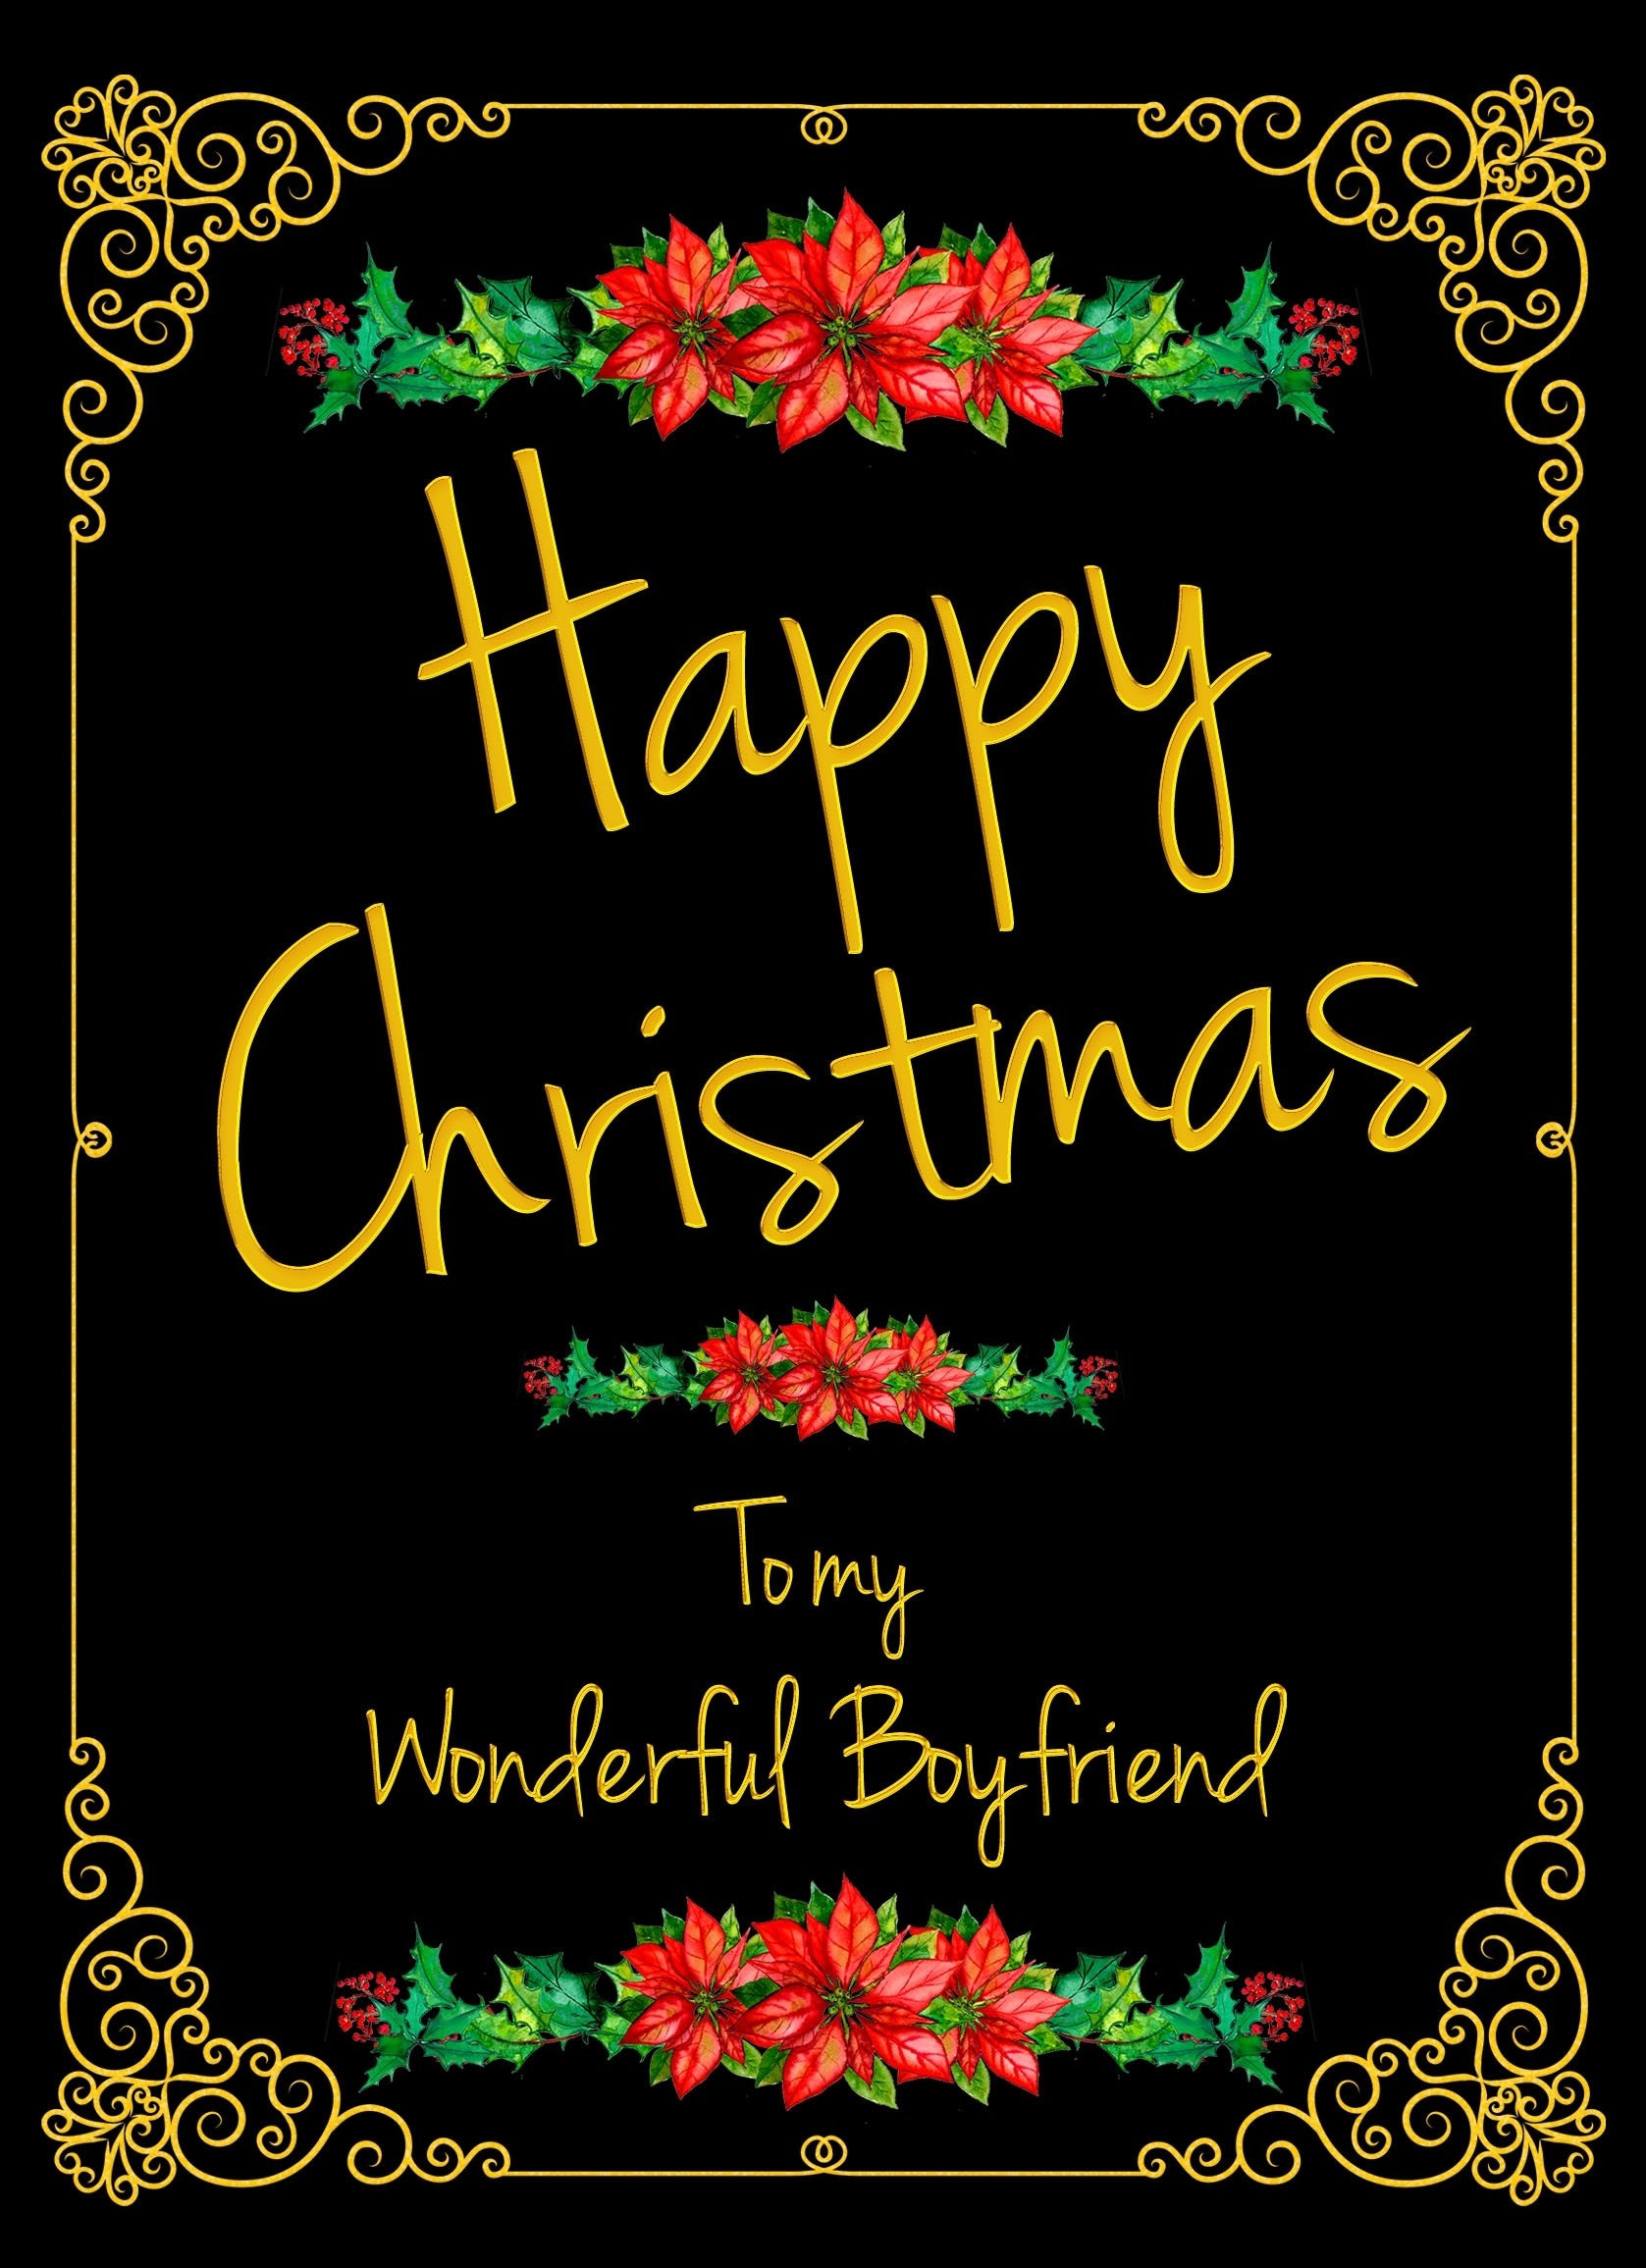 Christmas Card For Boyfriend (Wonderful)